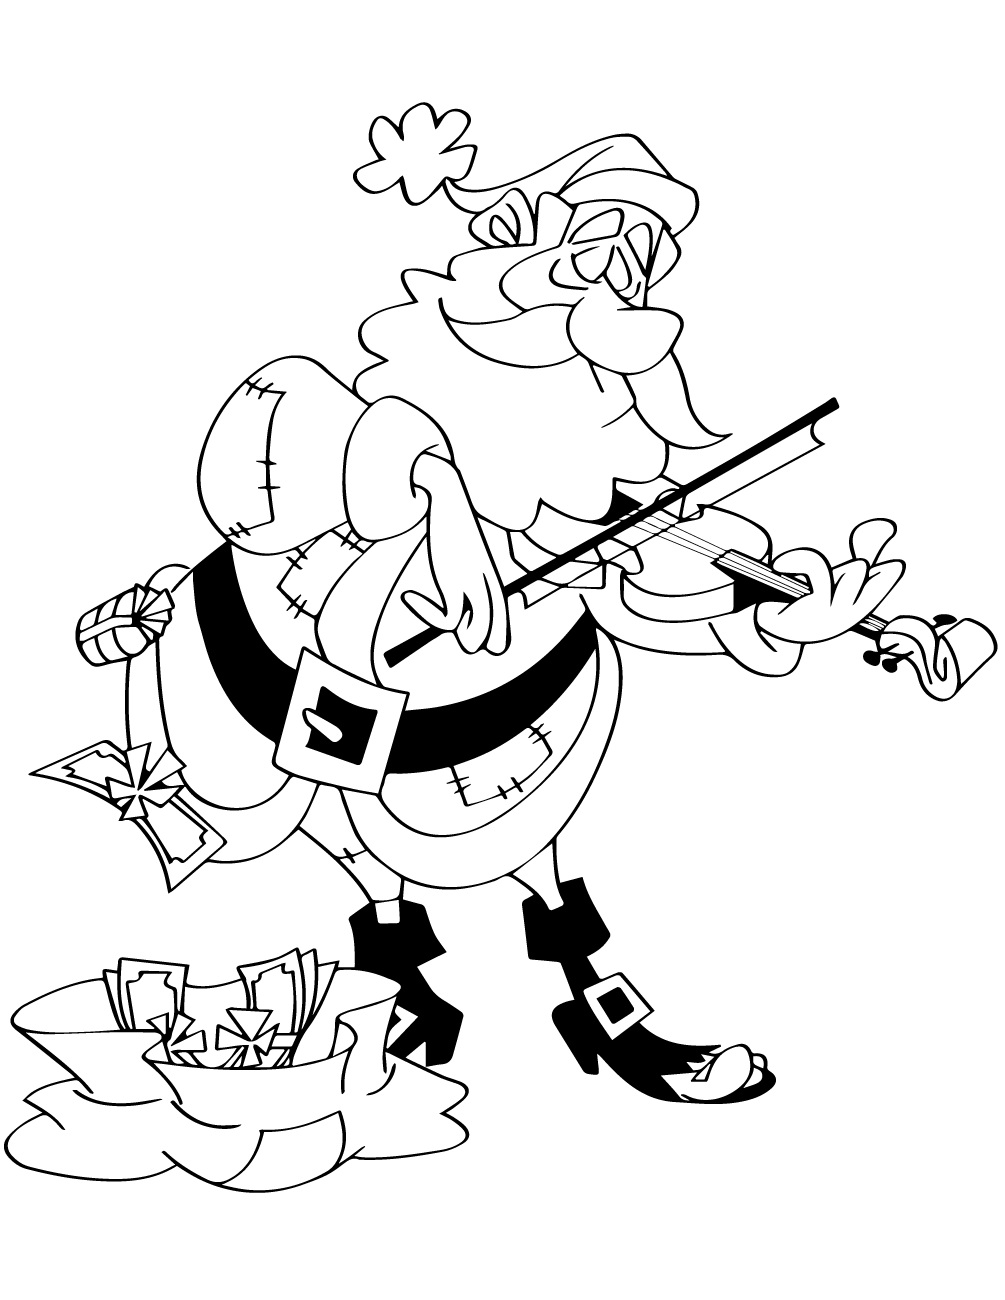 Santa Claus Playing Violin Coloring Page